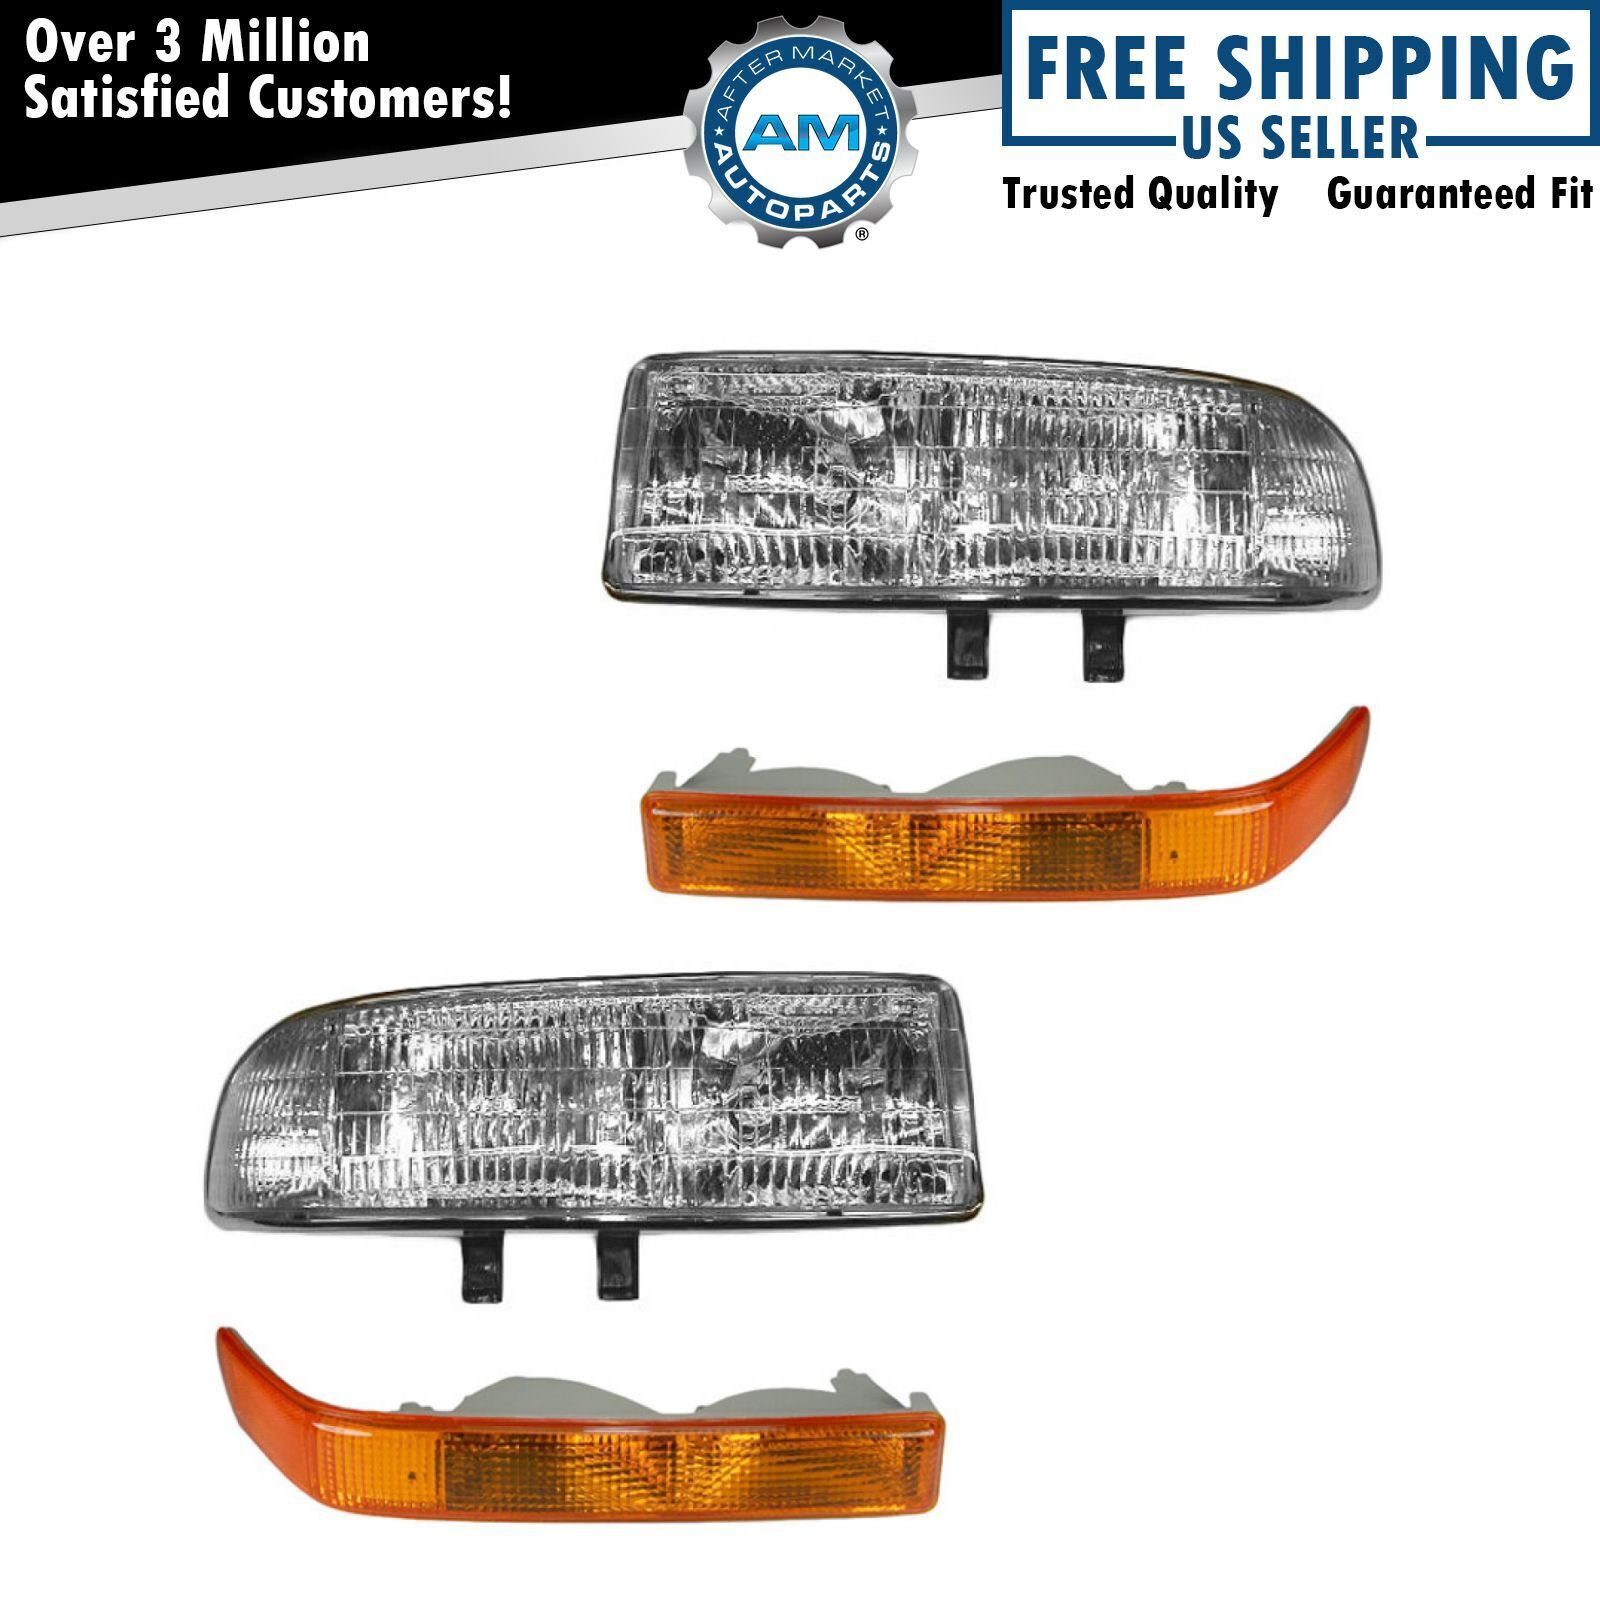 Headlight & Corner Light Kit Set of 4 for S10 S15 Pickup Blazer Jimmy NEW